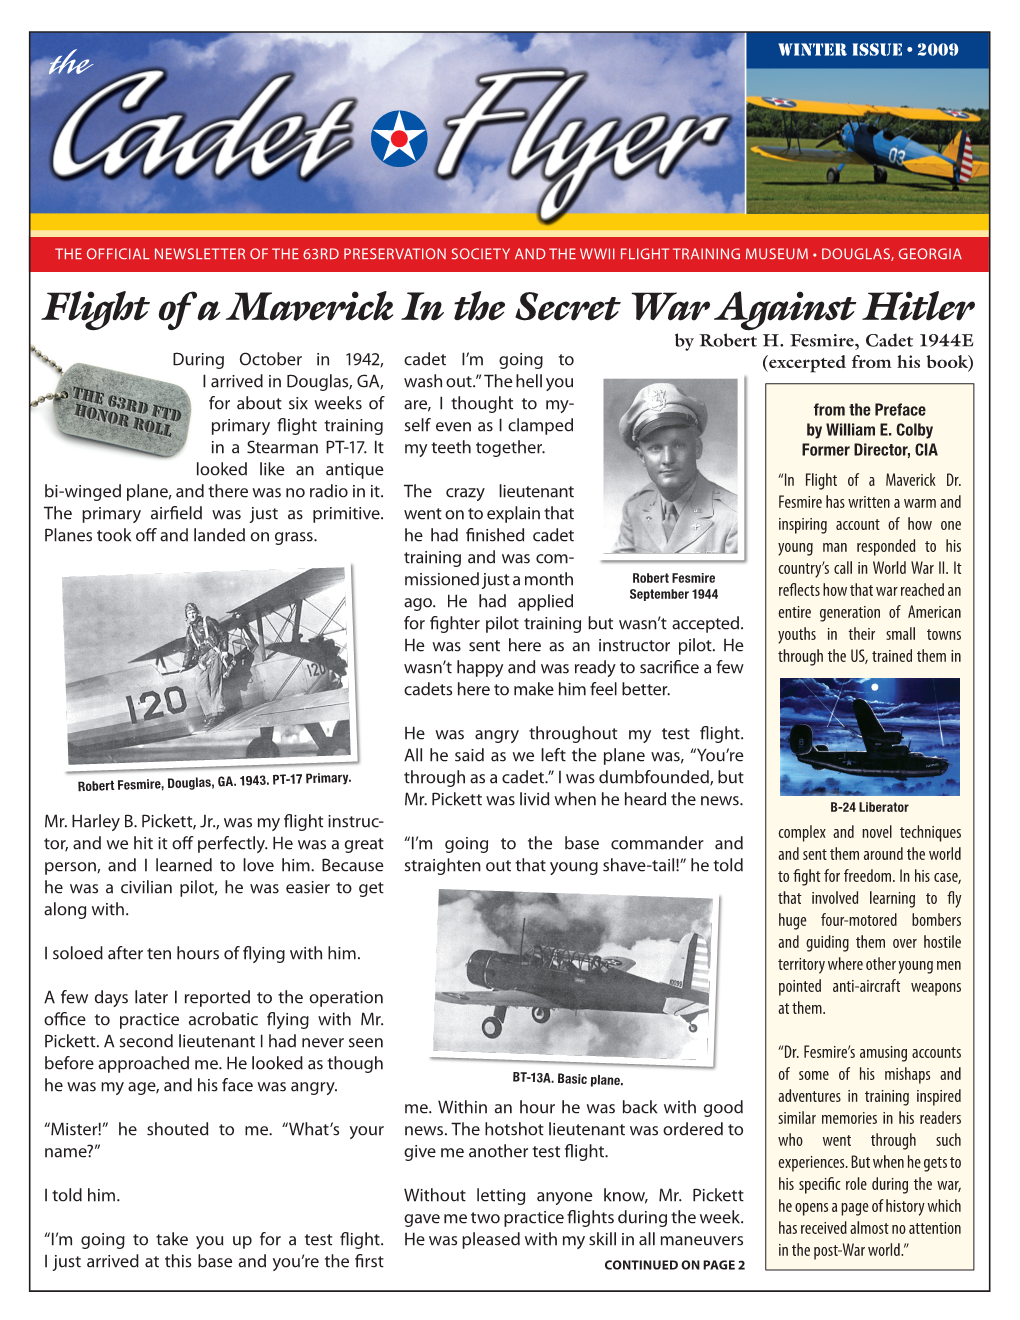 Flight of a Maverick in the Secret War Against Hitler by Robert H